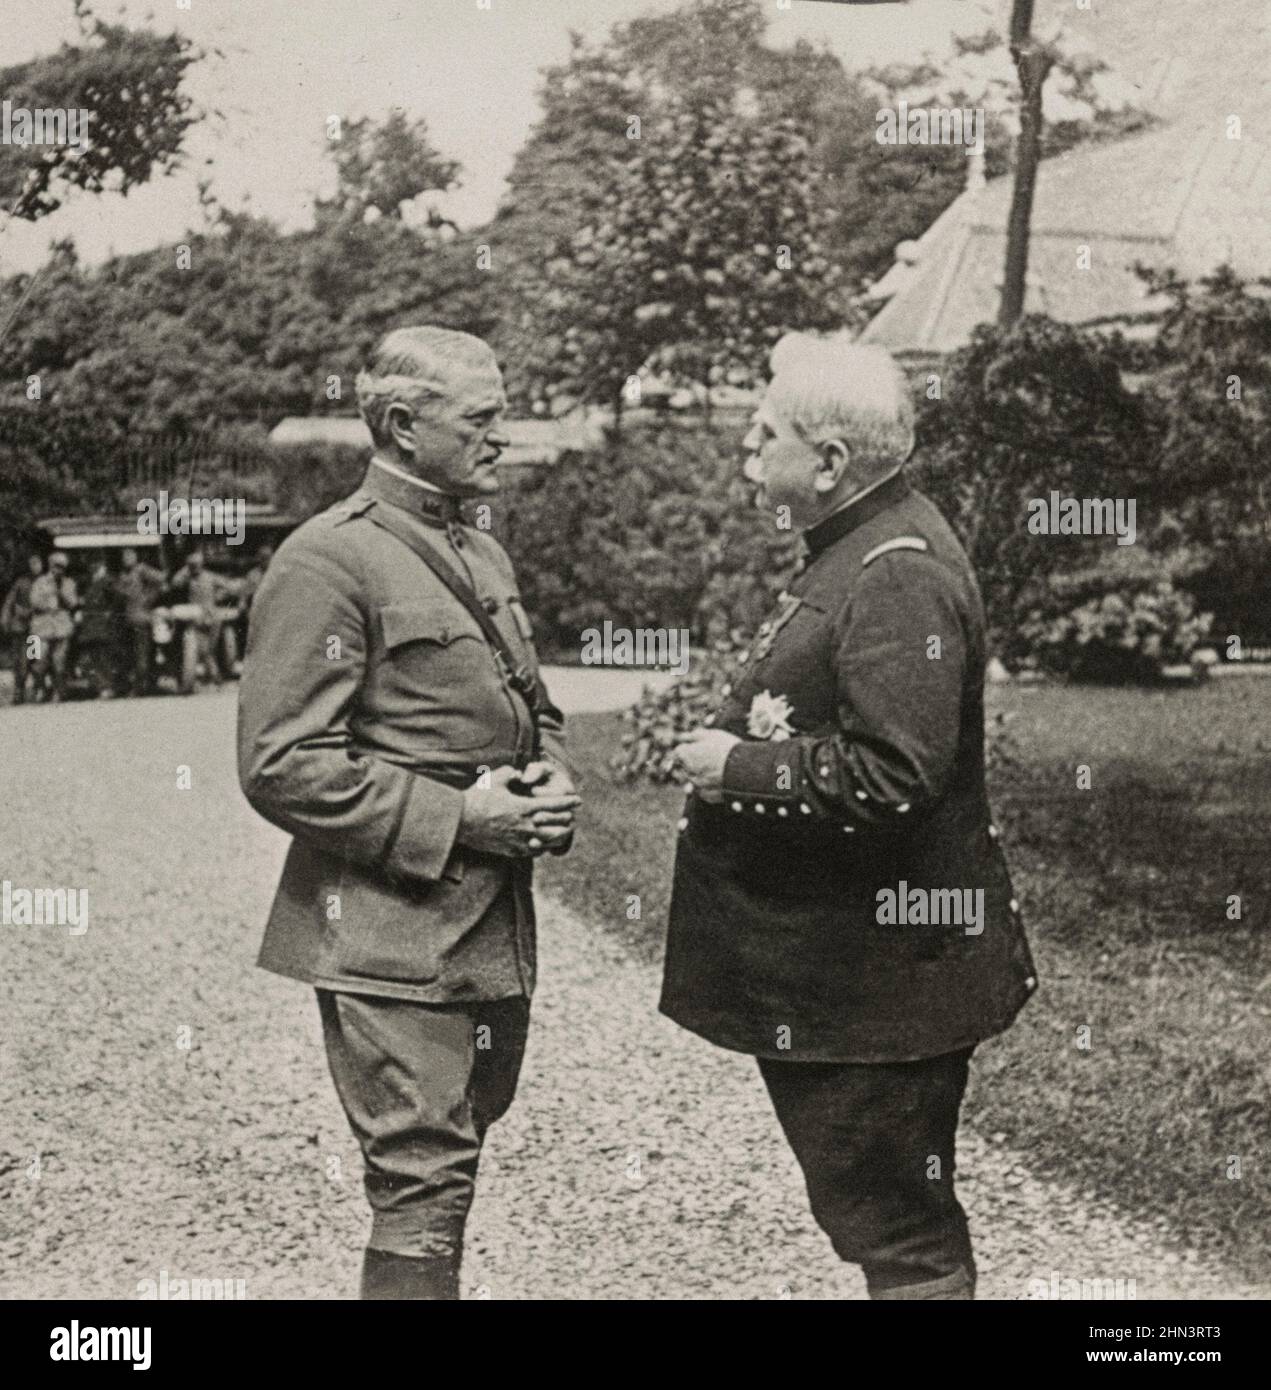 Foto vintage del mariscal de Francia Joseph Joffre y del general John J. Pershing en los Jardines del Gobernador. París, Francia. 1918 Foto de stock